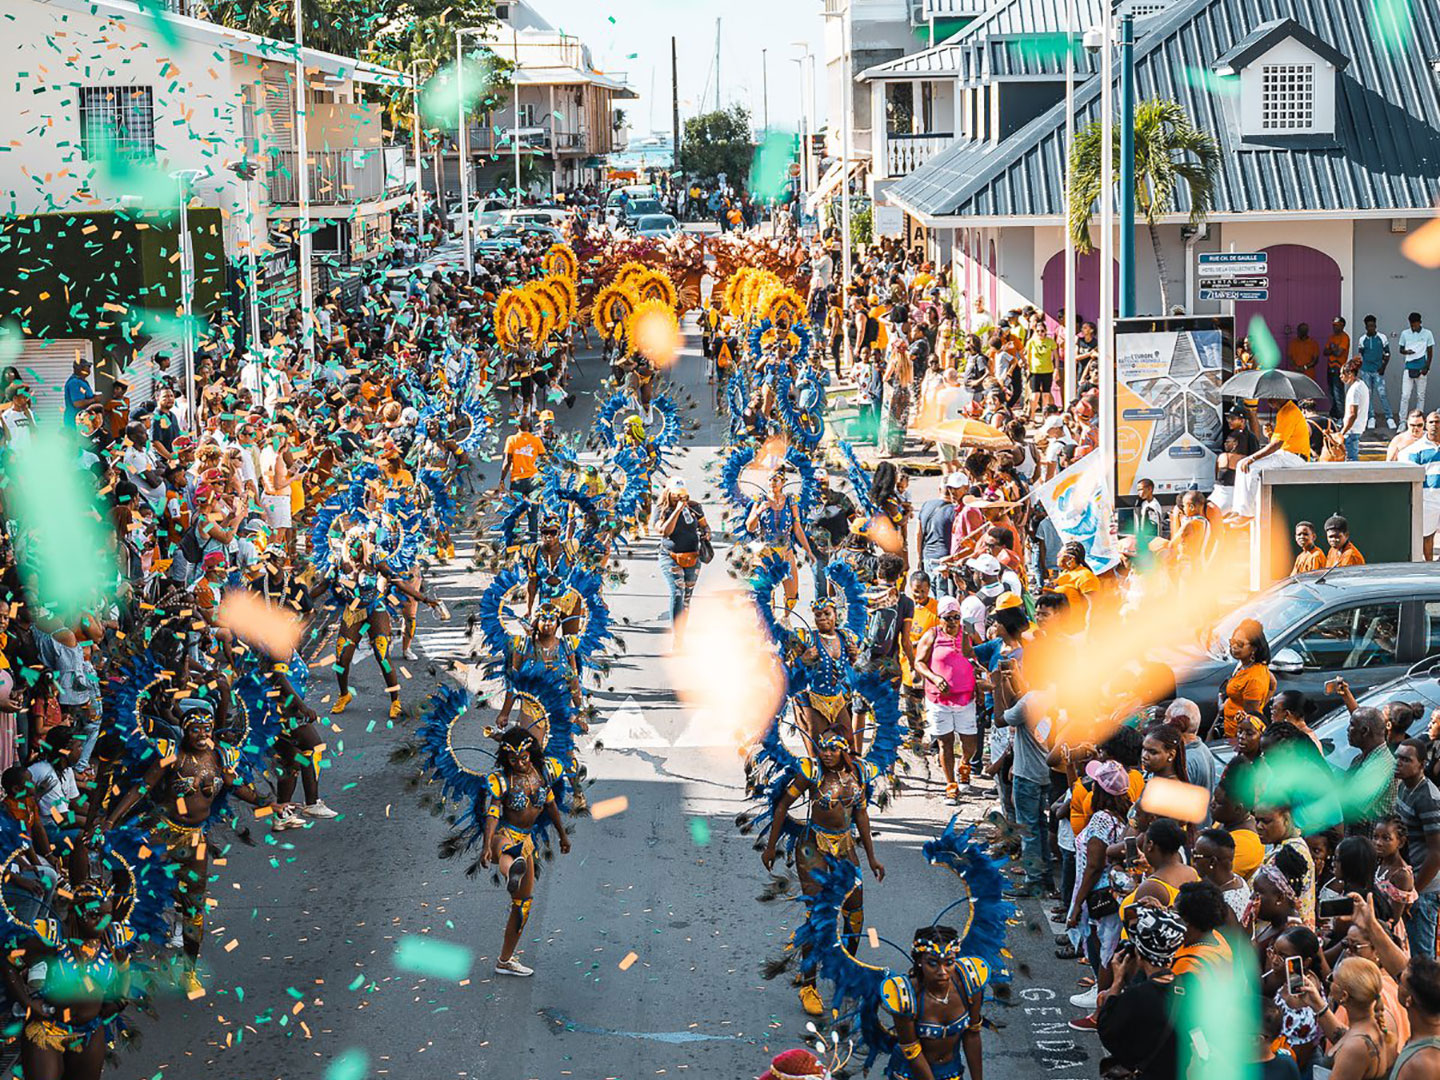 Carnaval SXM culture parade